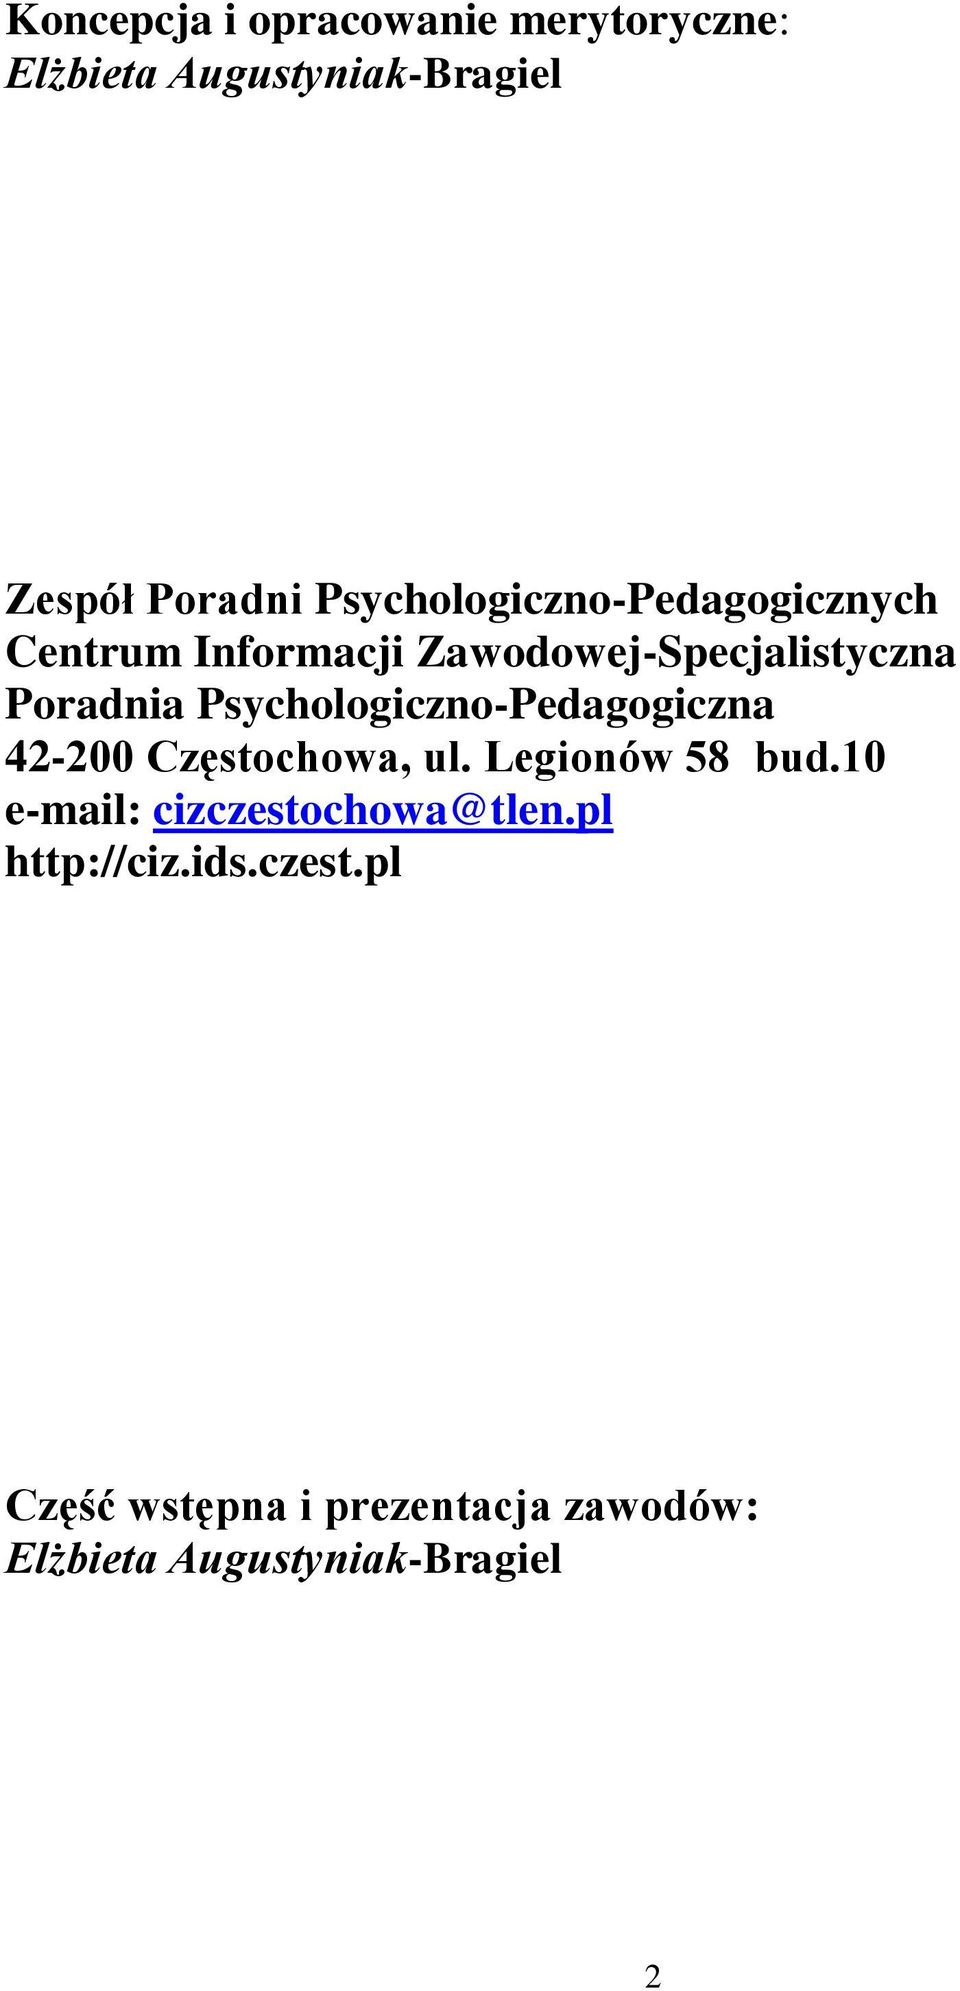 Psychologiczno-Pedagogiczna 42-200 Częstochowa, ul. Legionów 58 bud.